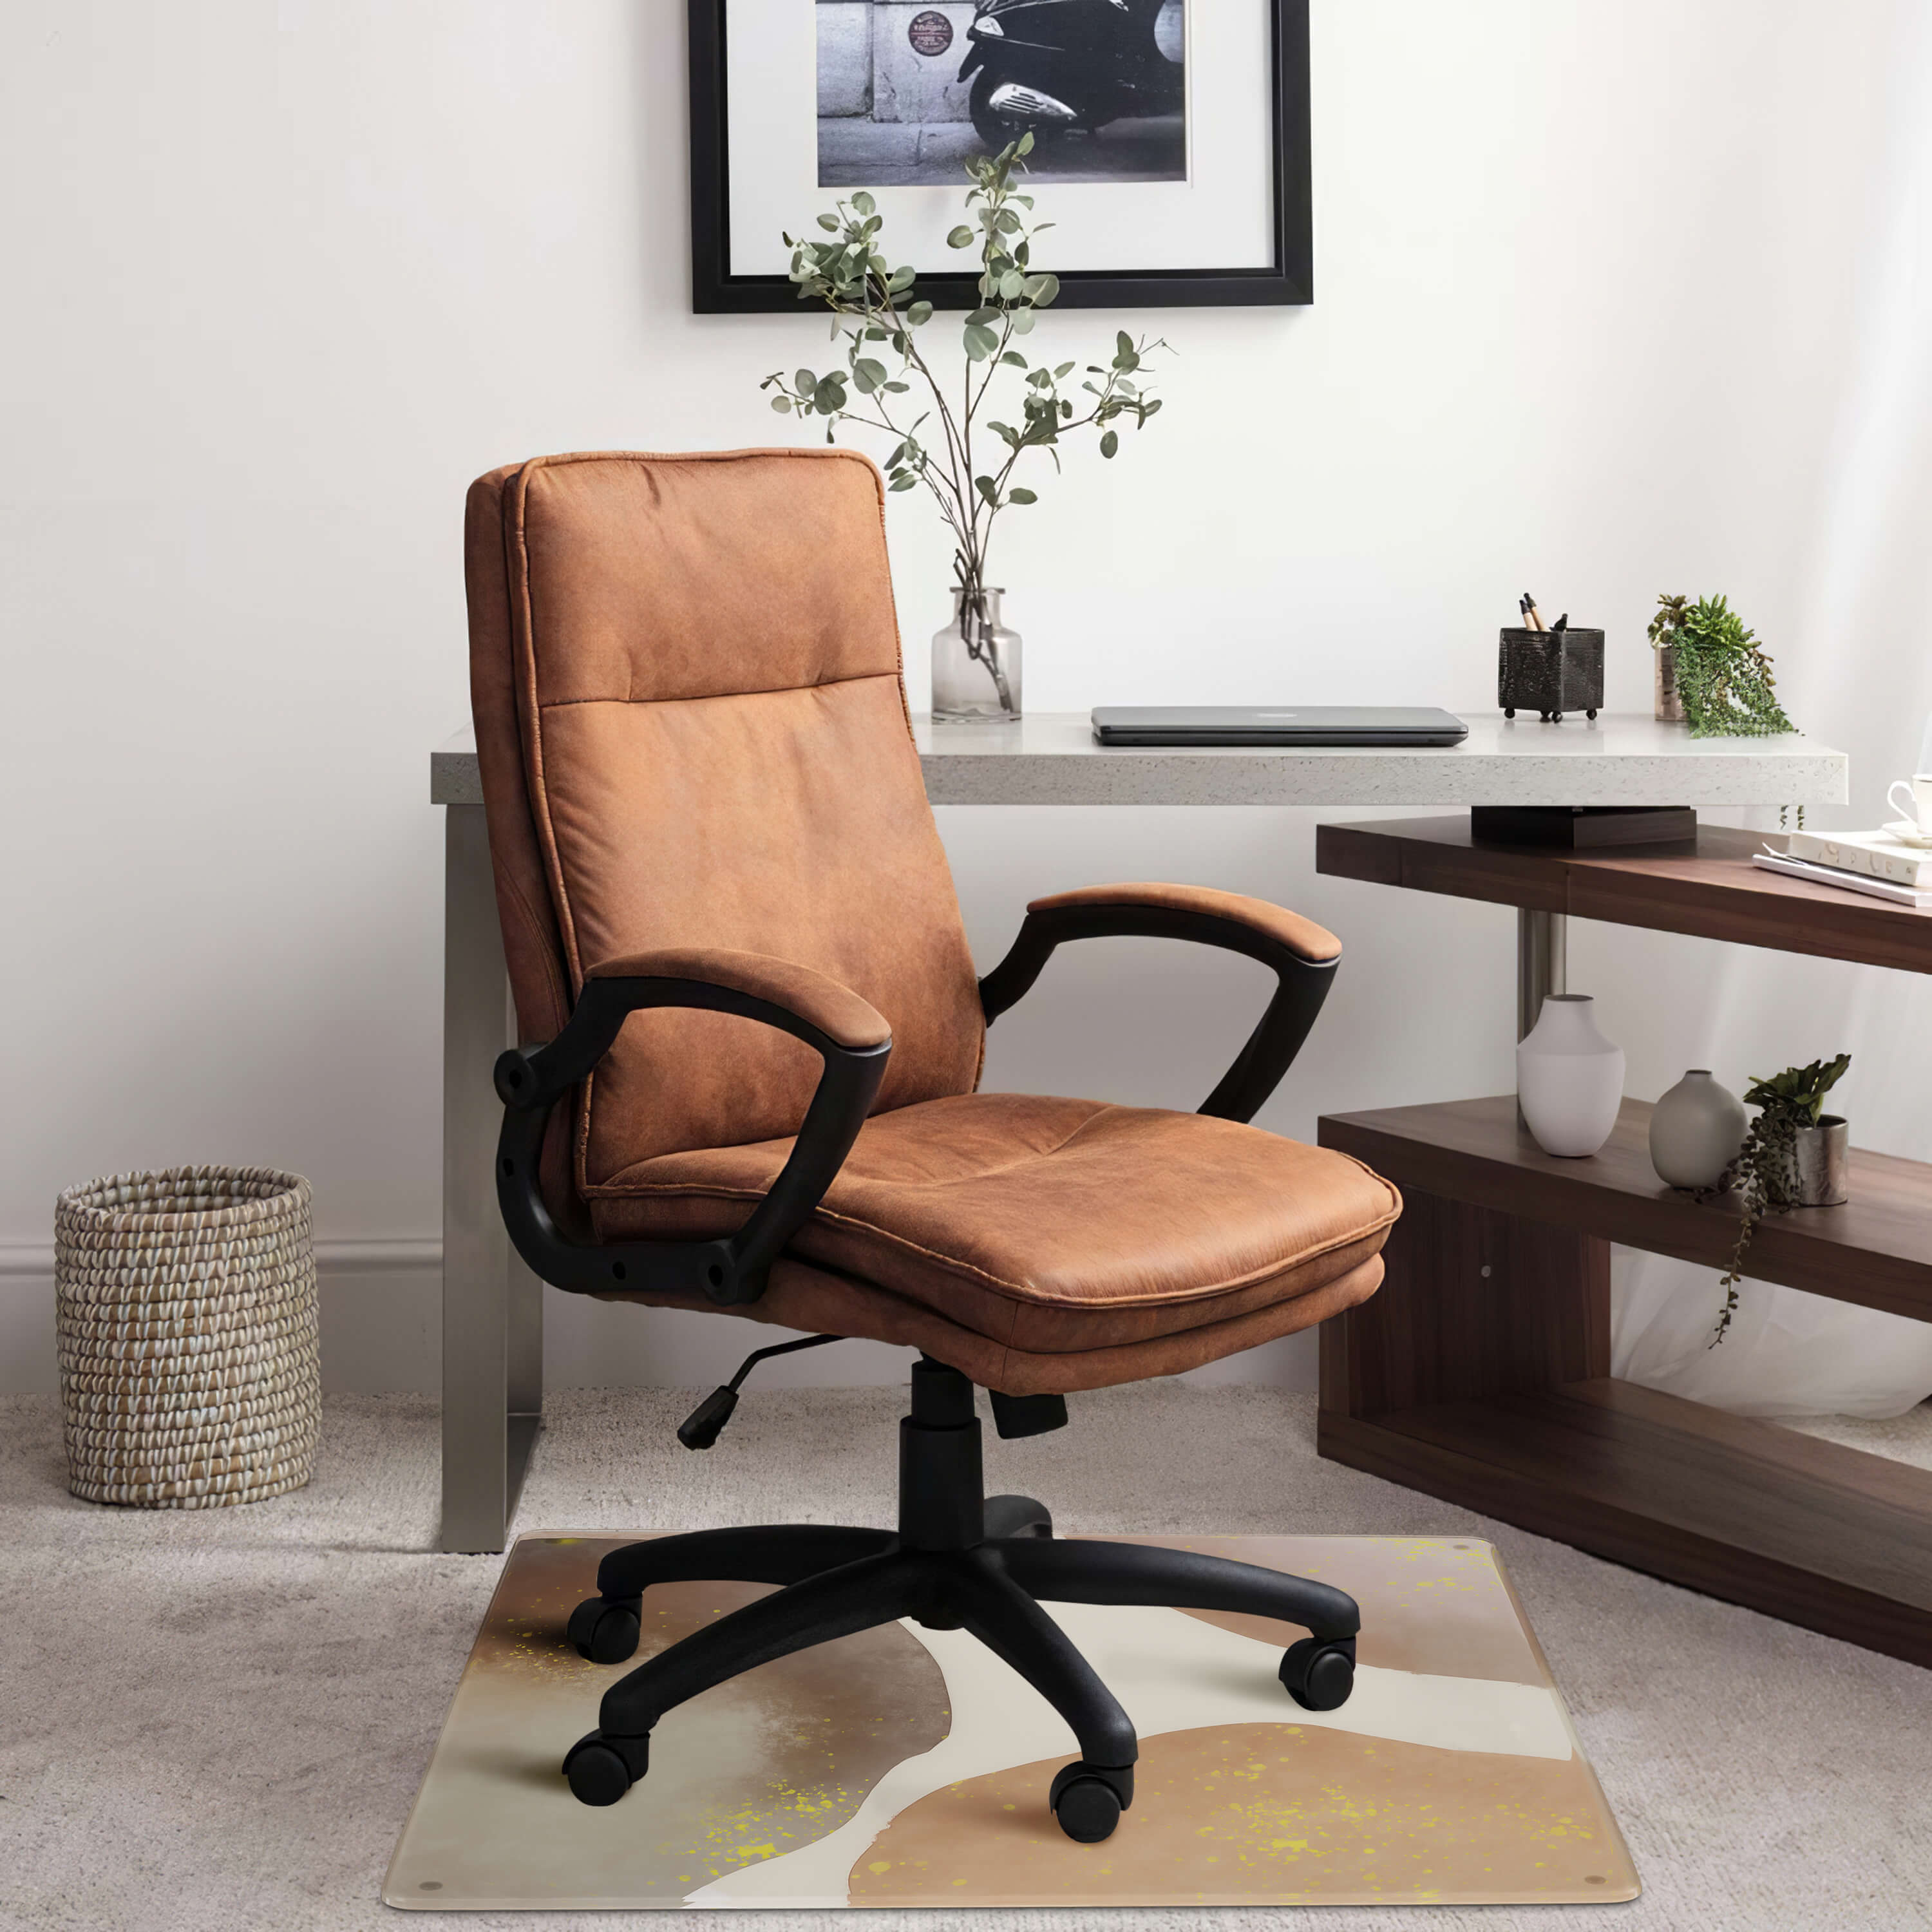 Arabesque Desk Chair Mat - Chocolate